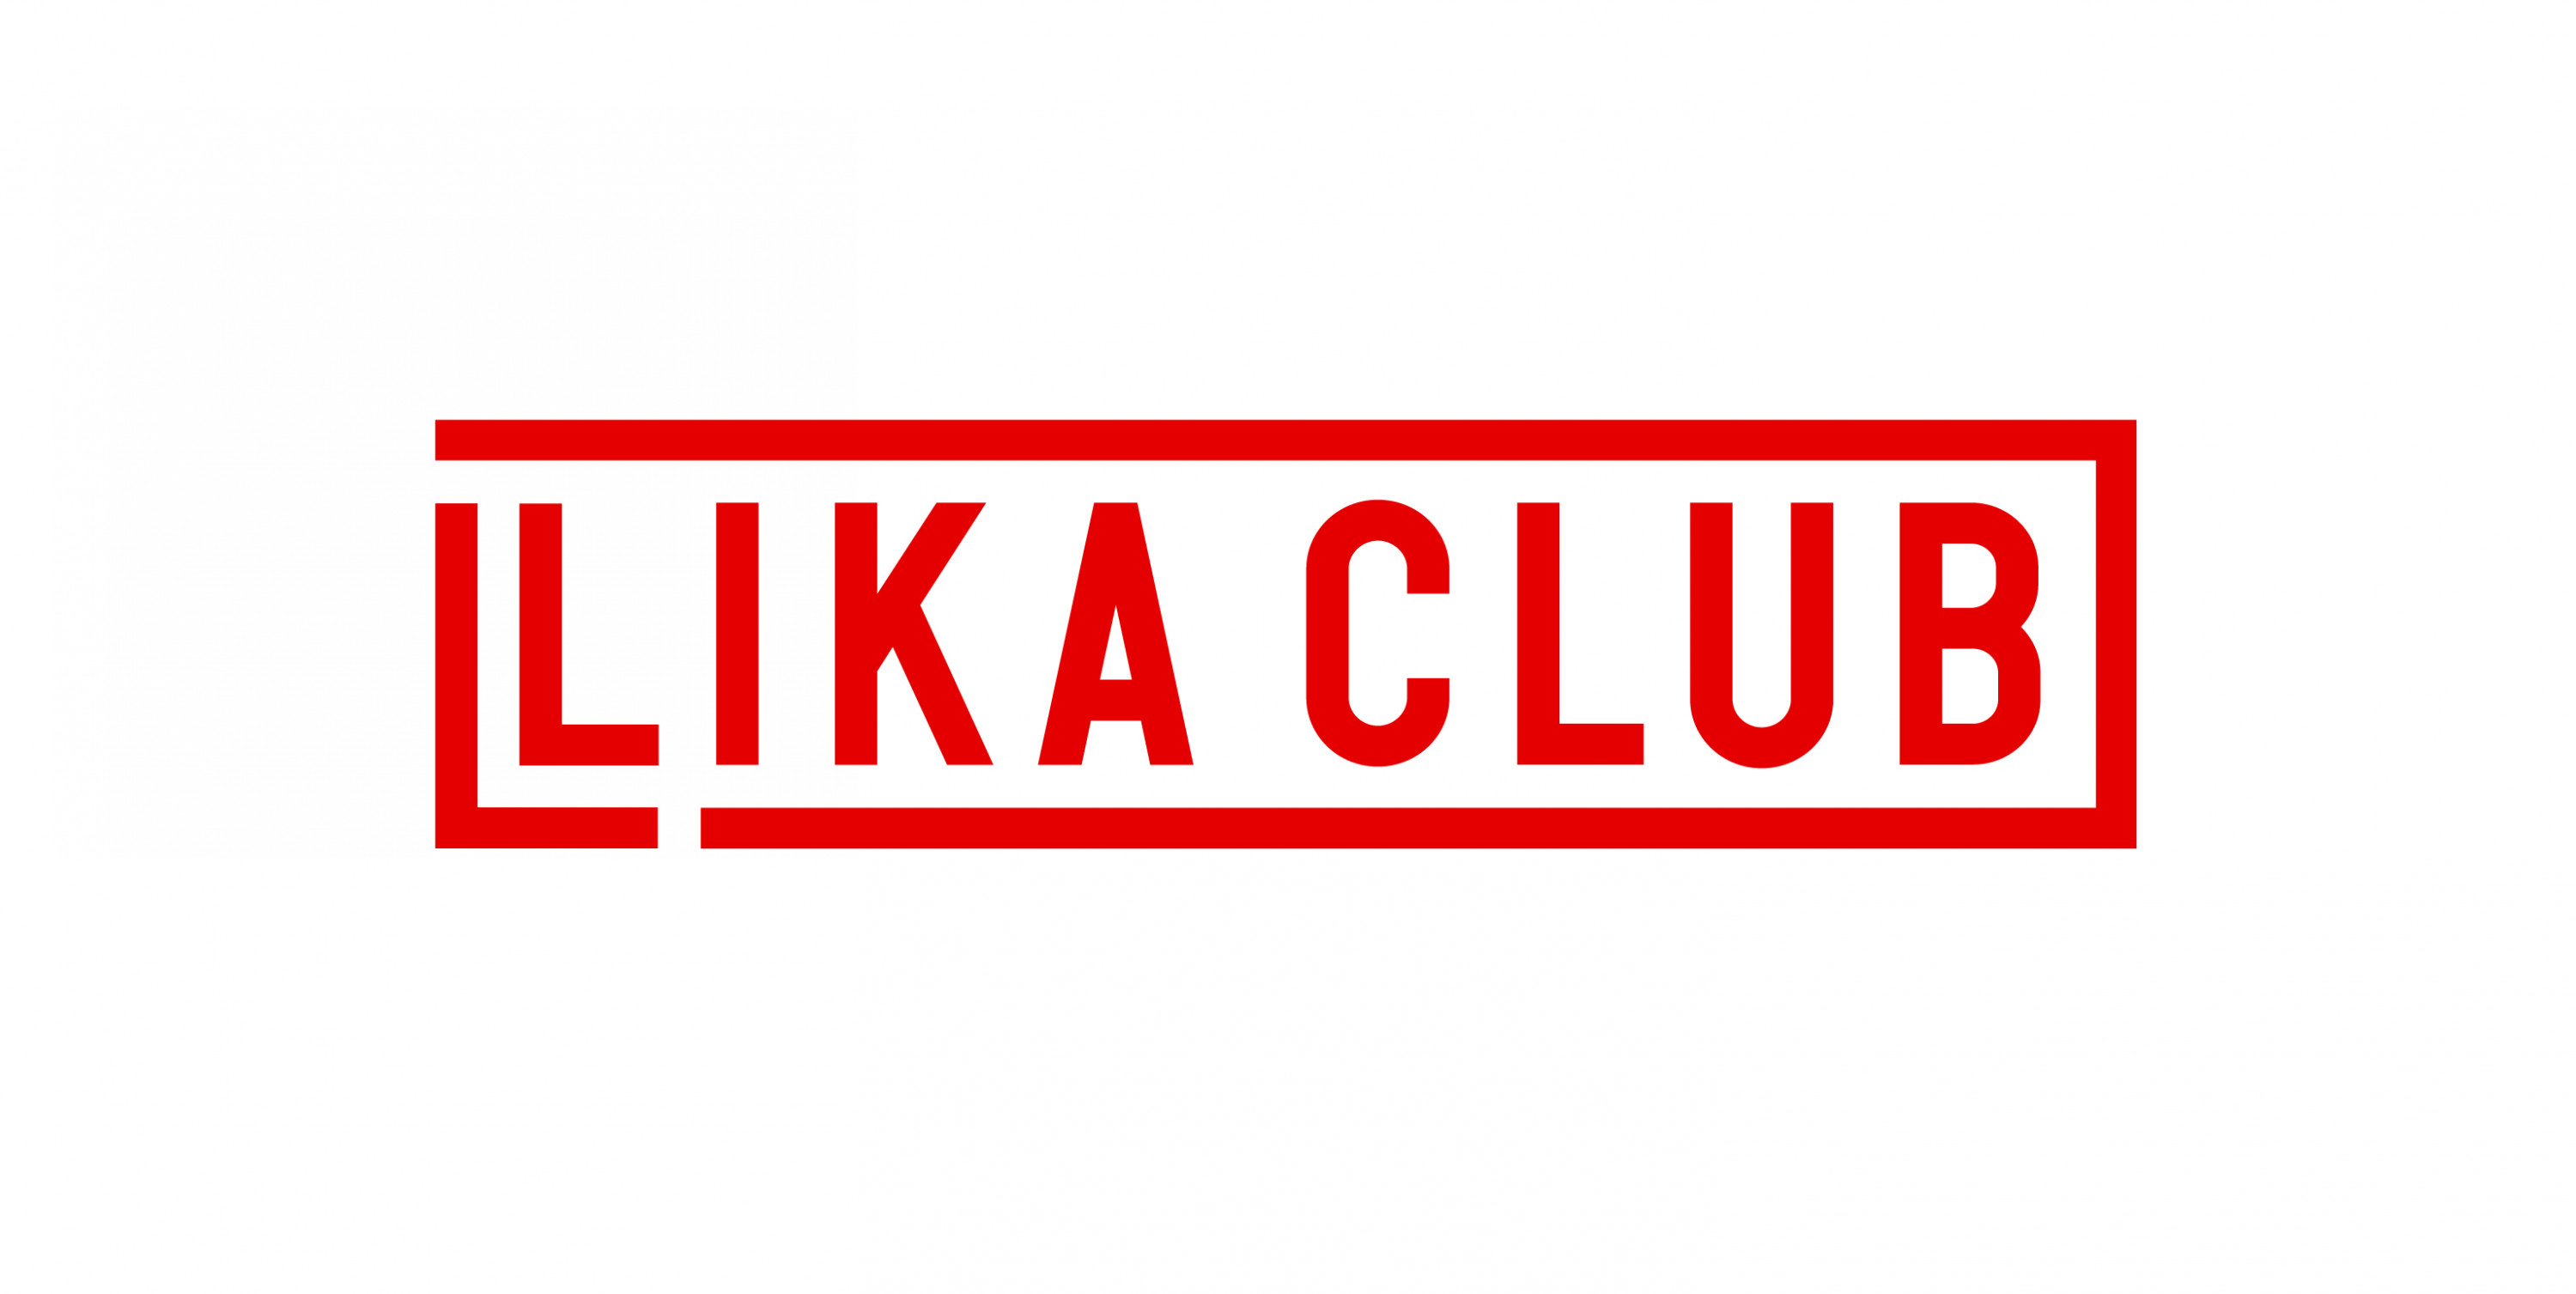 Likaclub logo2.jpg